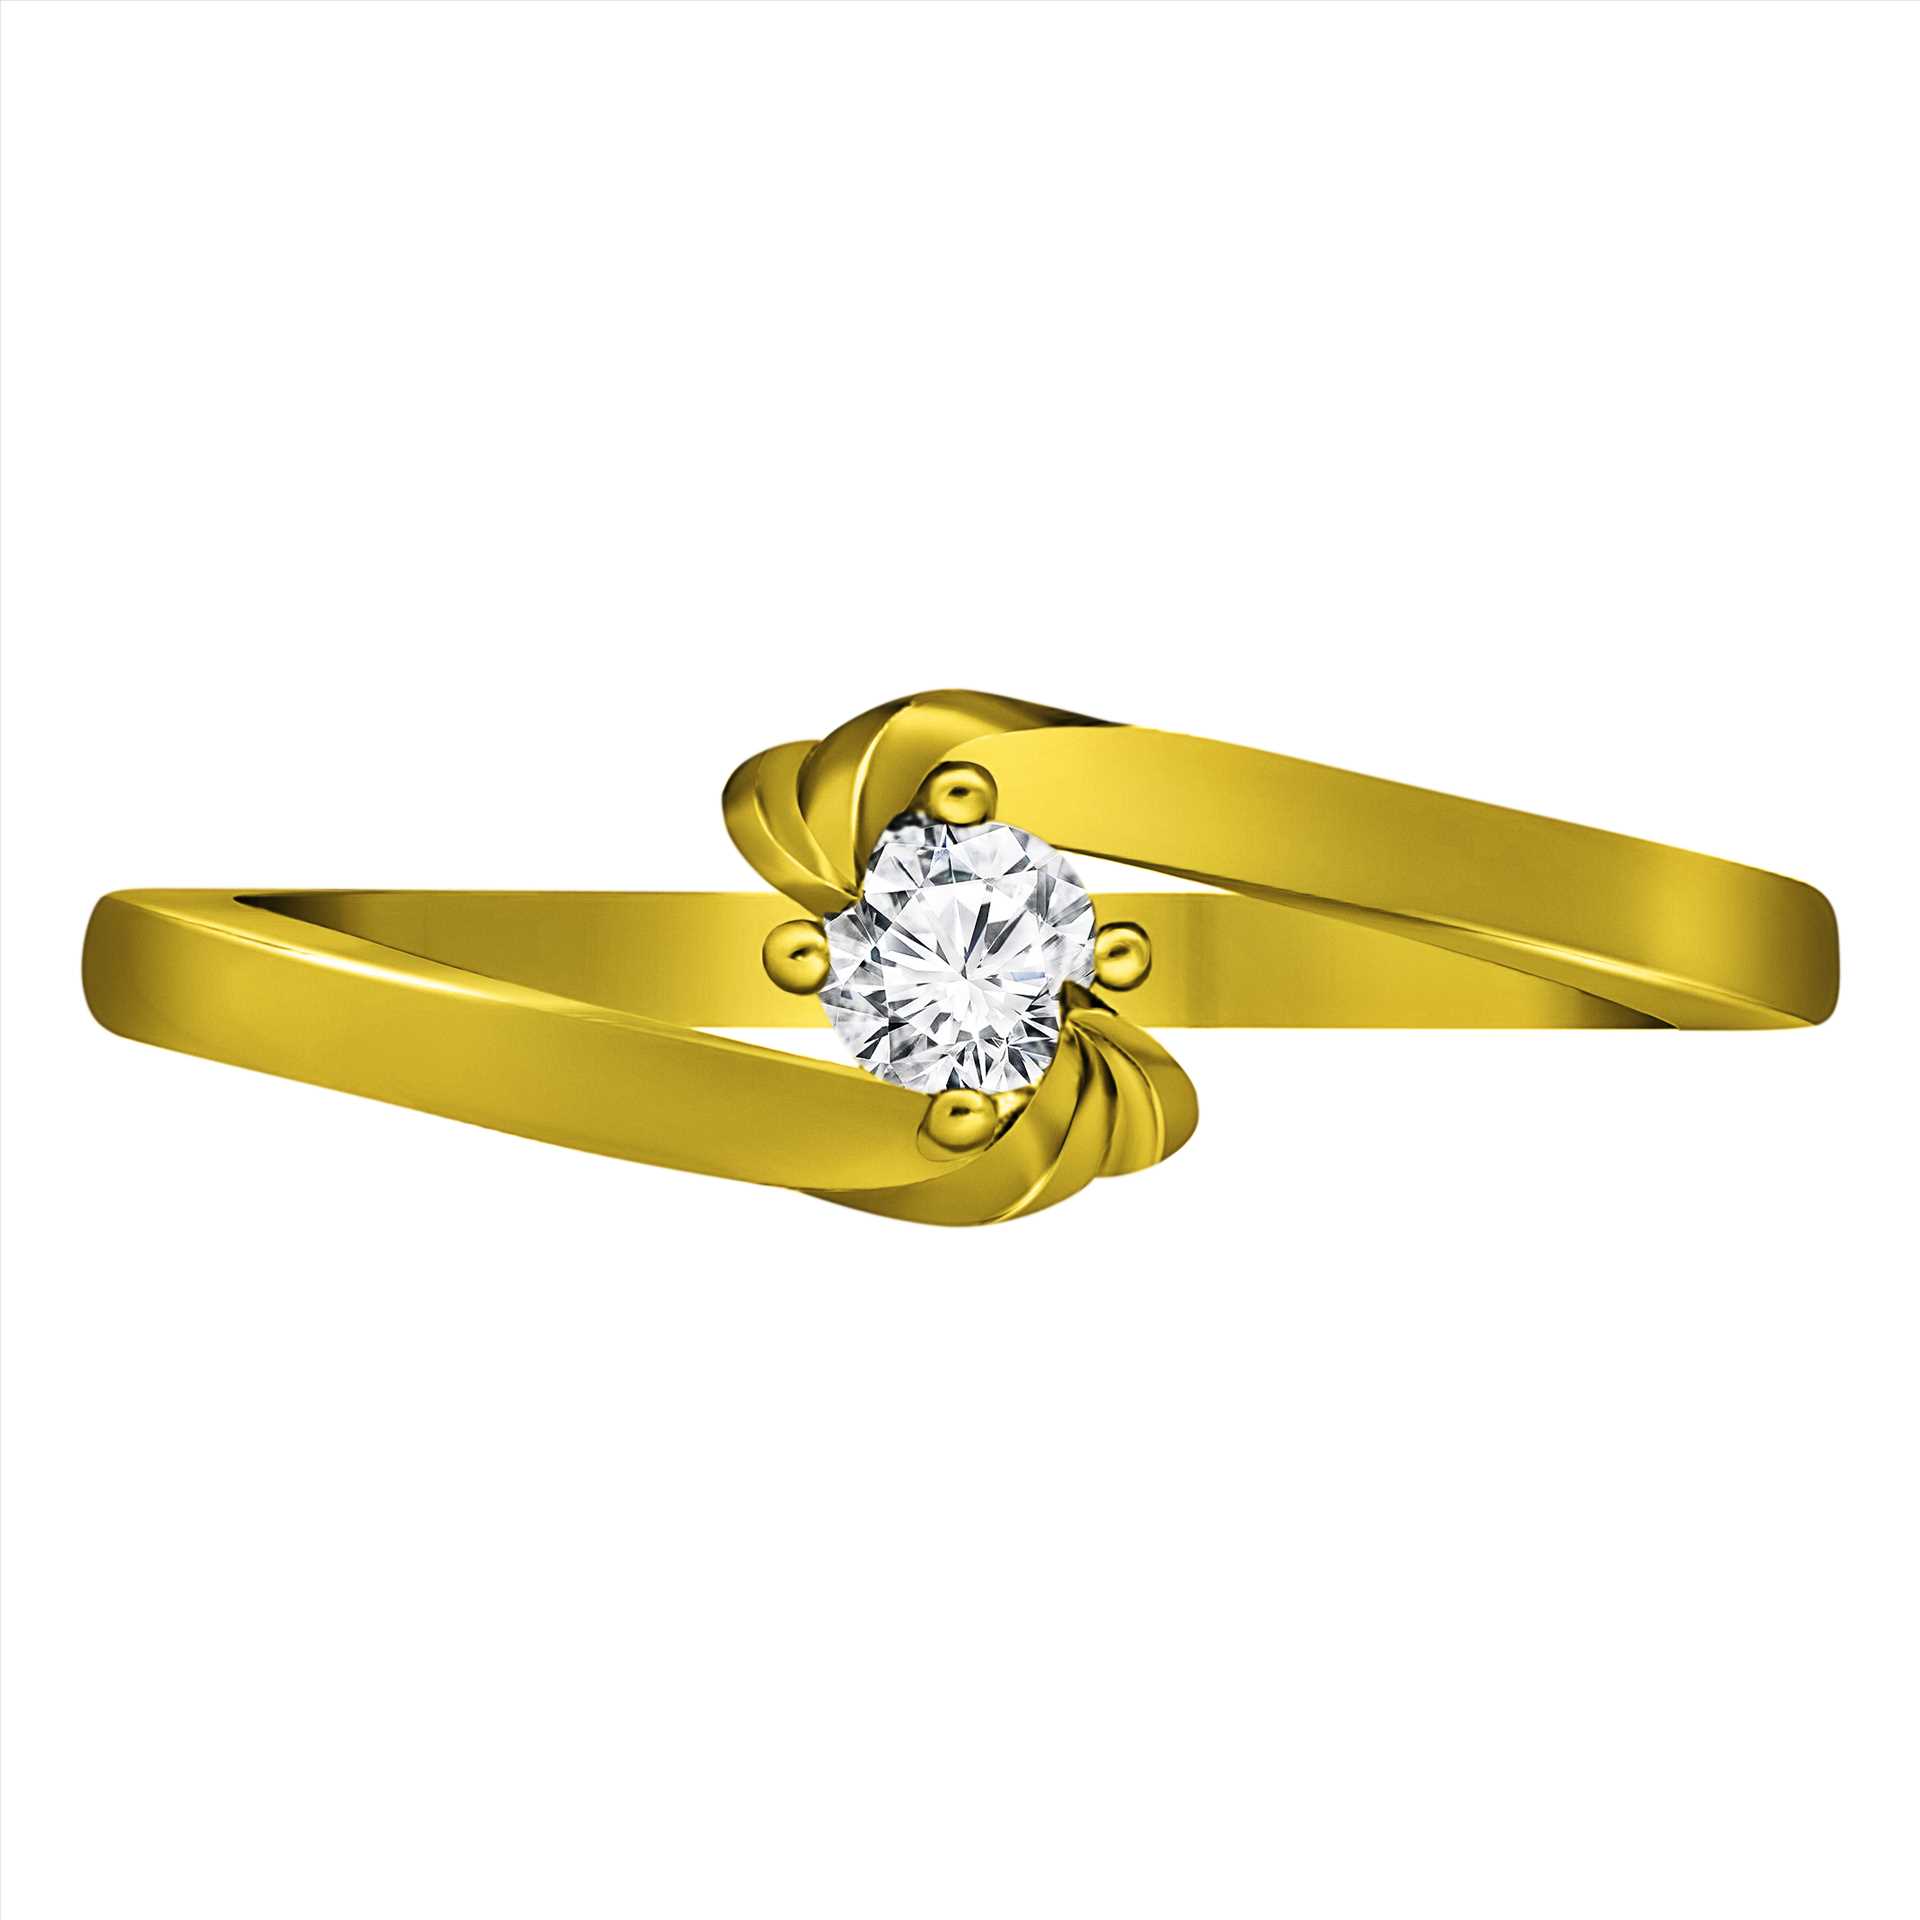 טבעת אירוסין משובצת יהלום טבעי במשקל 0.10 קראט בעיצוב זהב לבן 14K